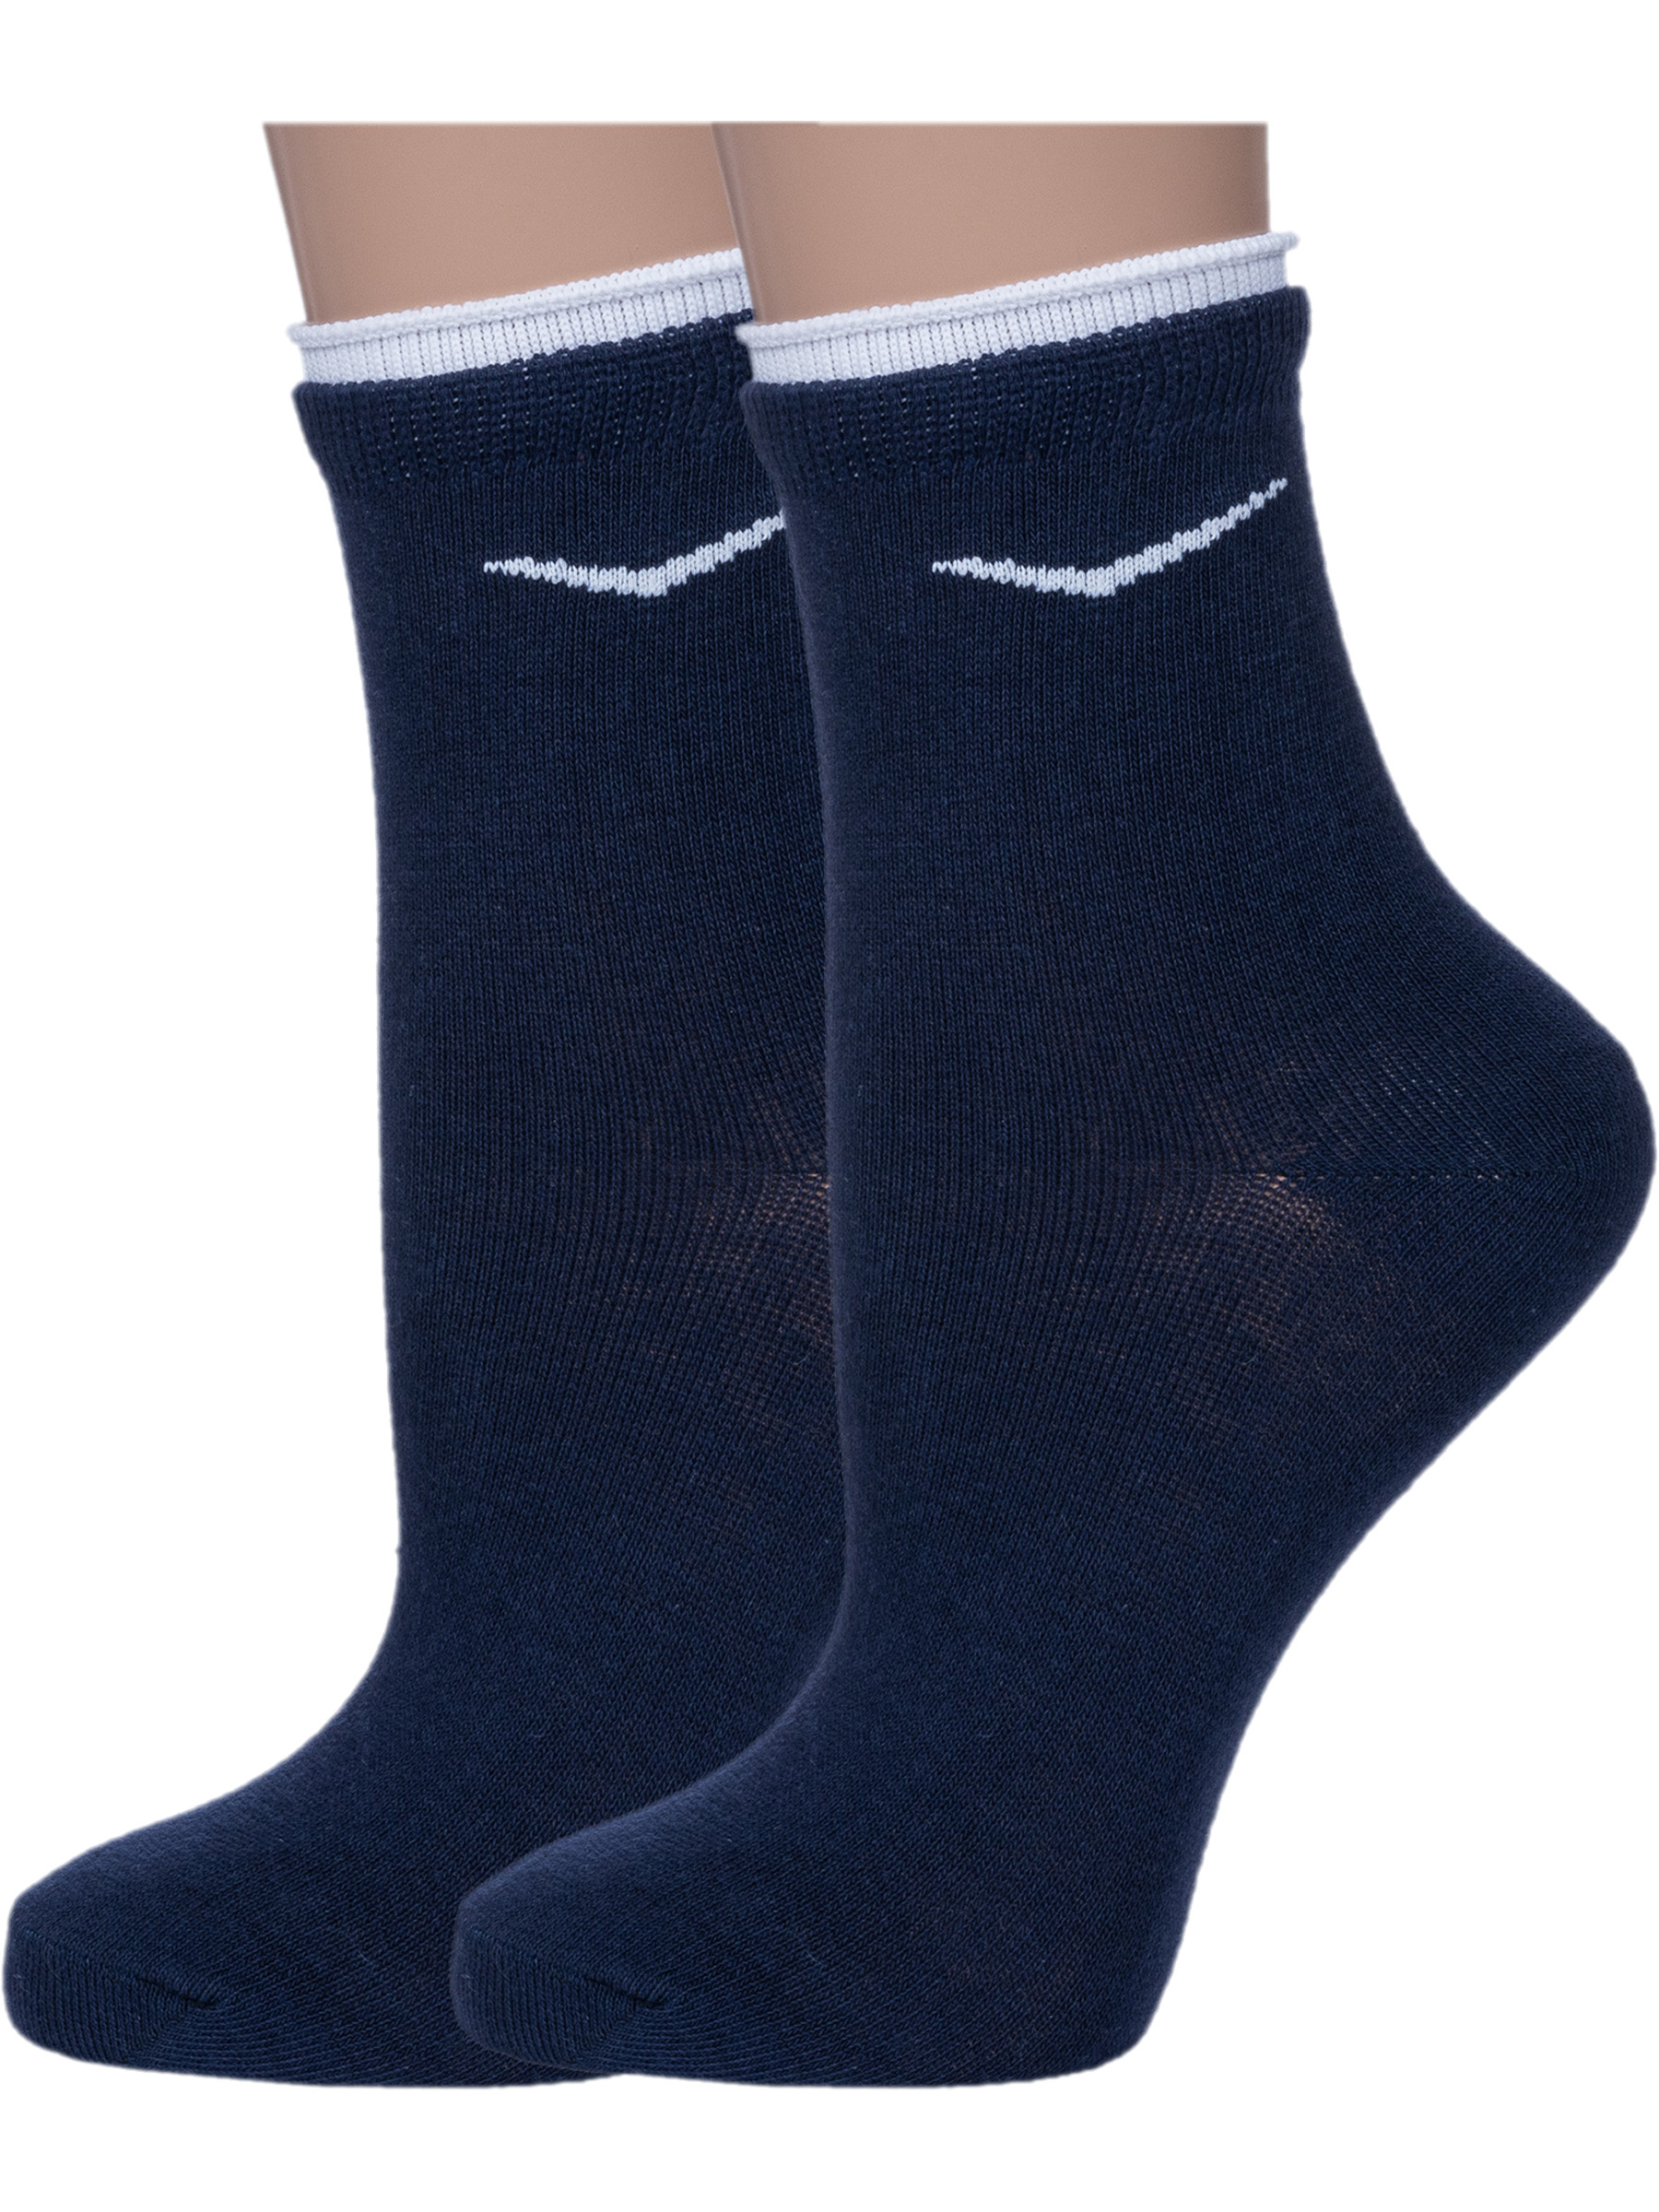 Комплект носков женских Смоленская Чулочная Фабрика 2-4С63 синих 23, 2 пары